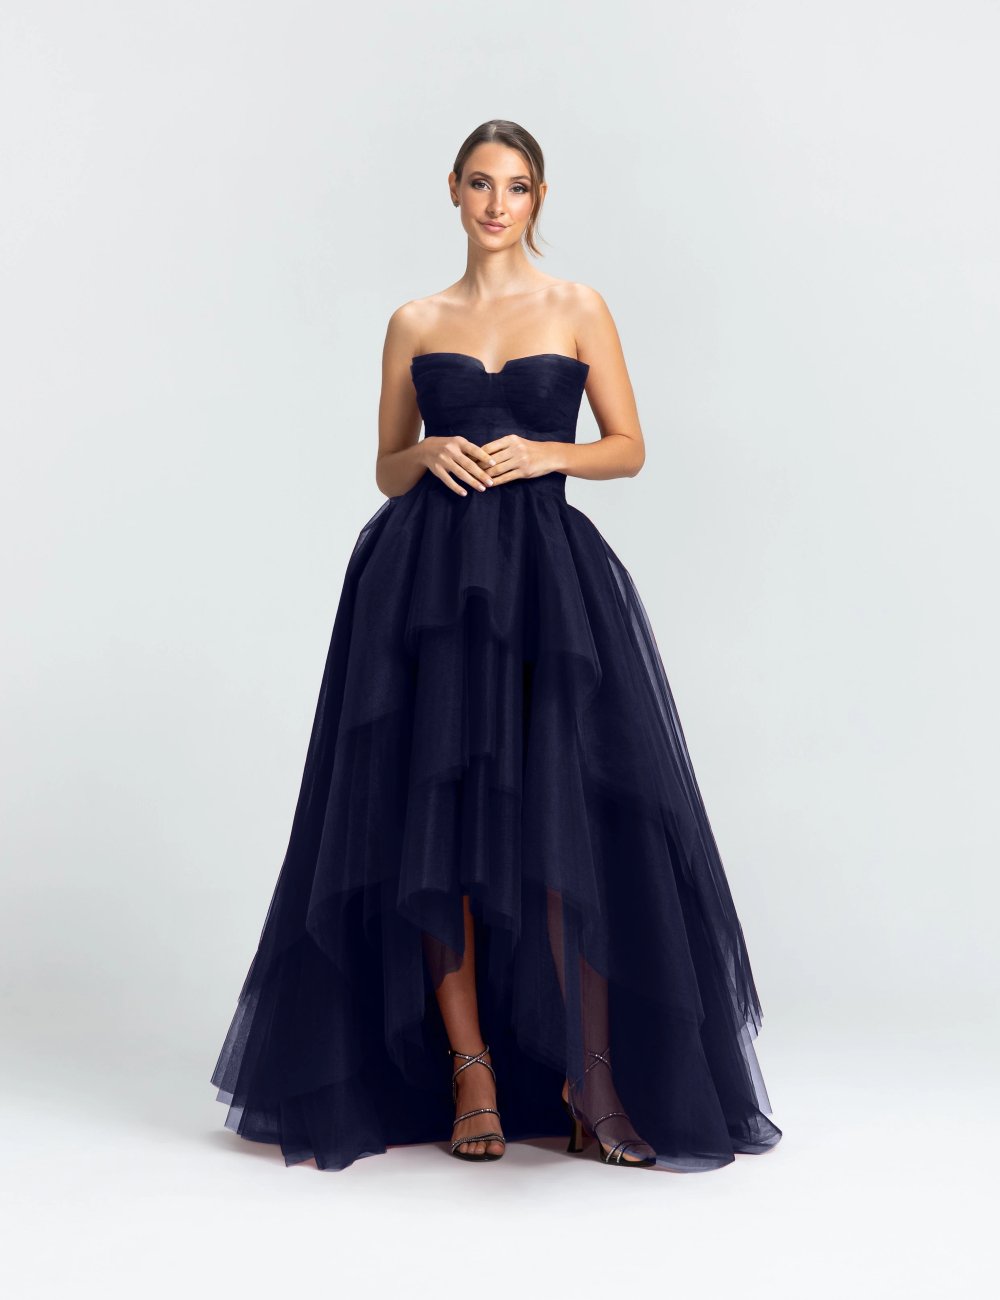 One Dress Upon A Time - vestido - vestidos de festa - moda - loja - https://stealthelook.com.br